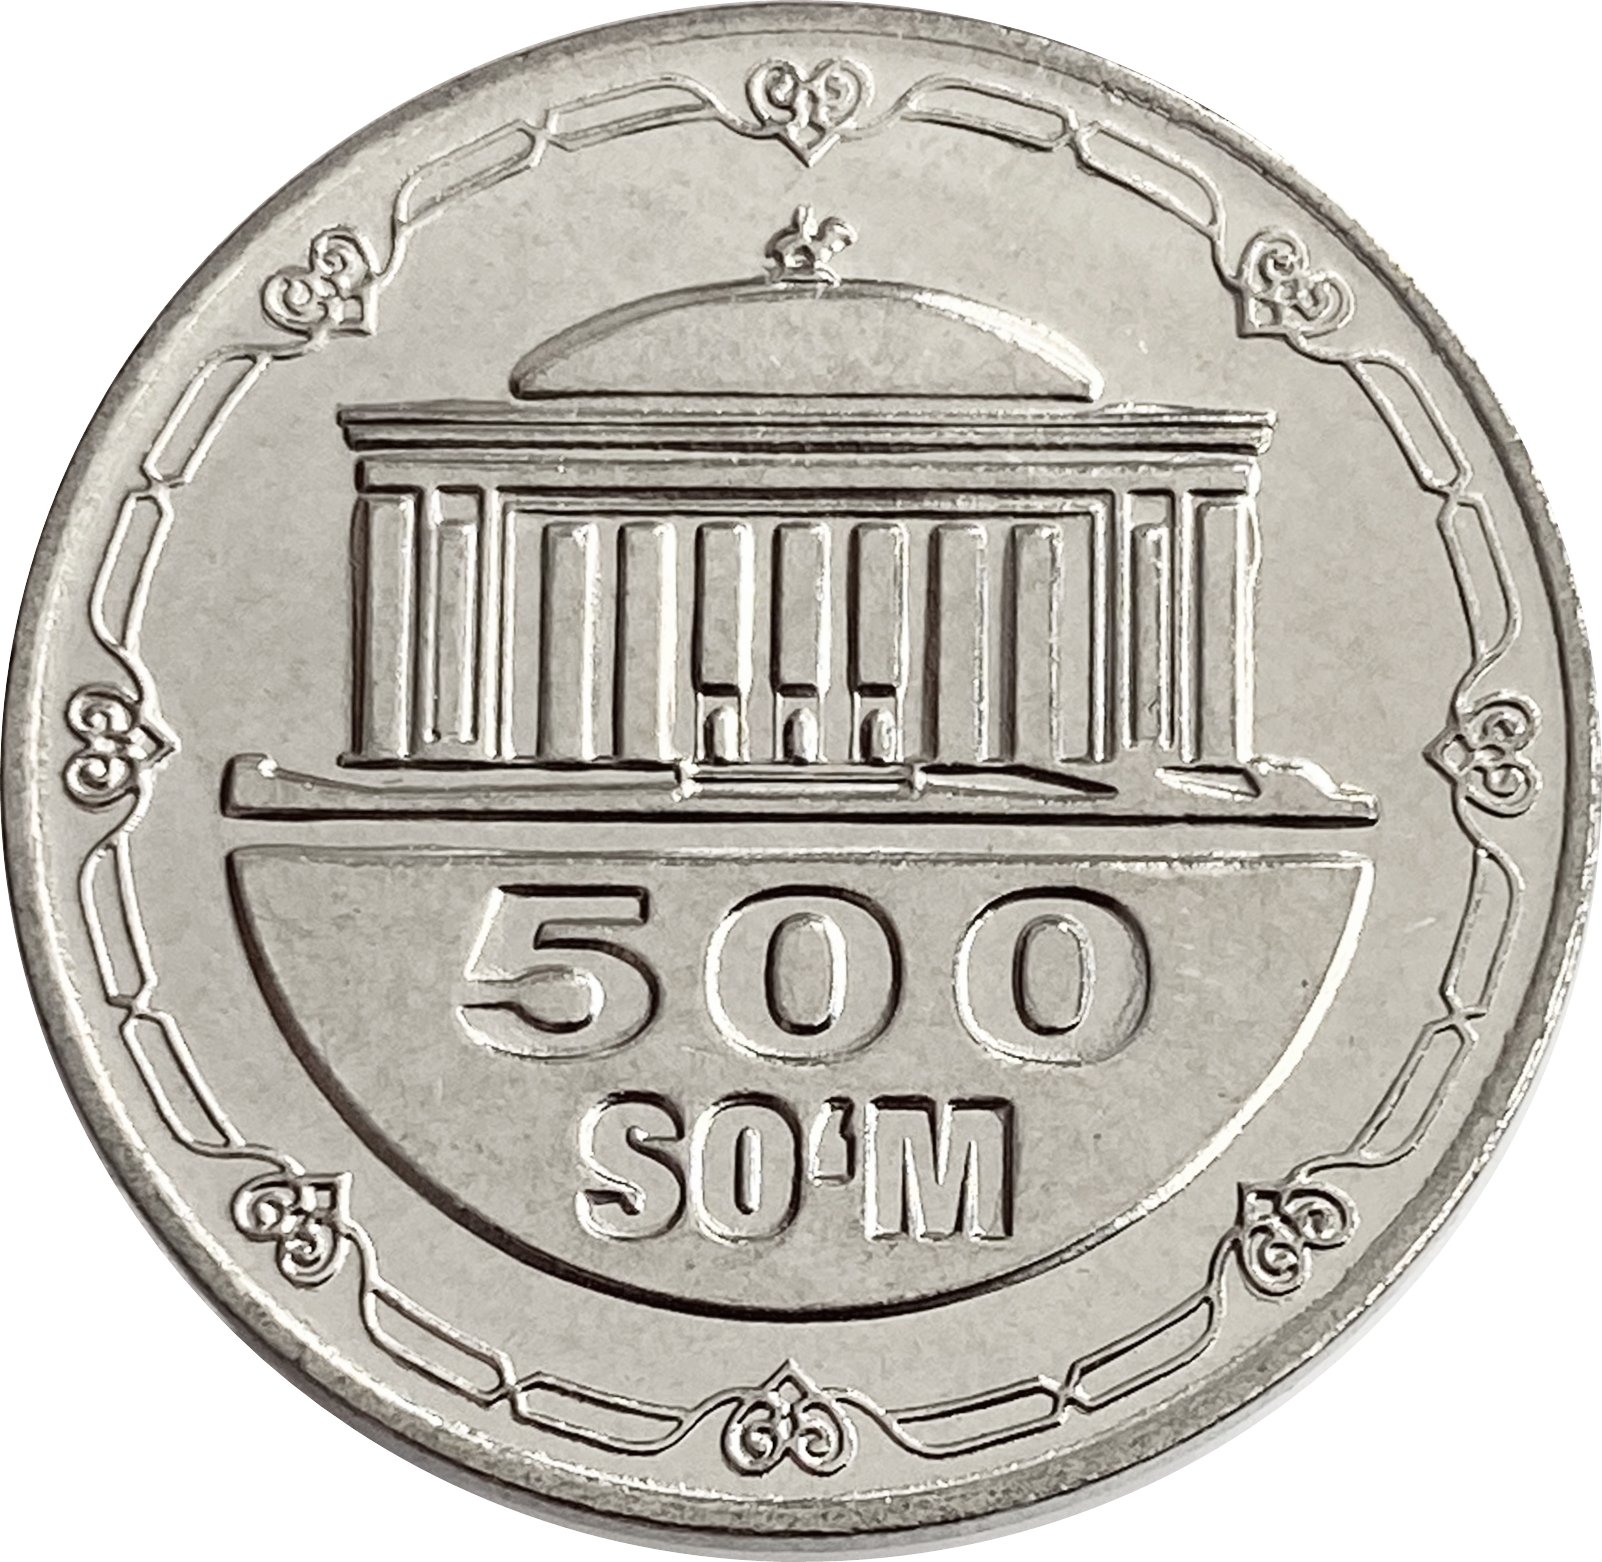 25 тысяч рублей в сумах узбекских. Монеты Узбекистана 2018 год. 500 Сум. Узбекистан монета 200 сумов. 500 Сум Узбекистан.